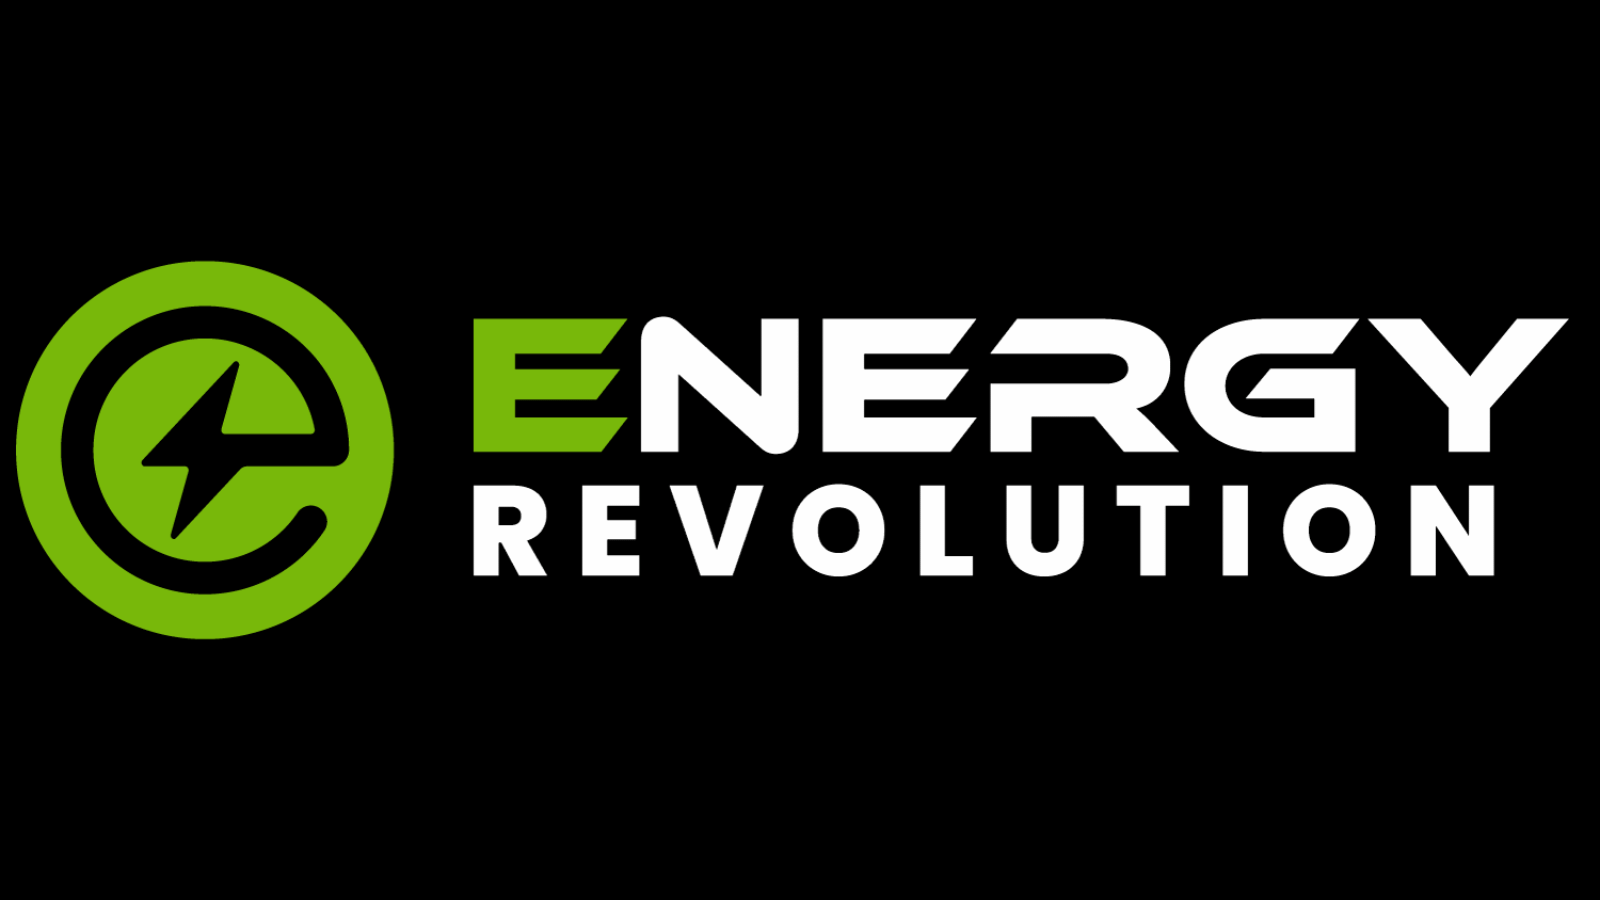 Energy Revolution 2023